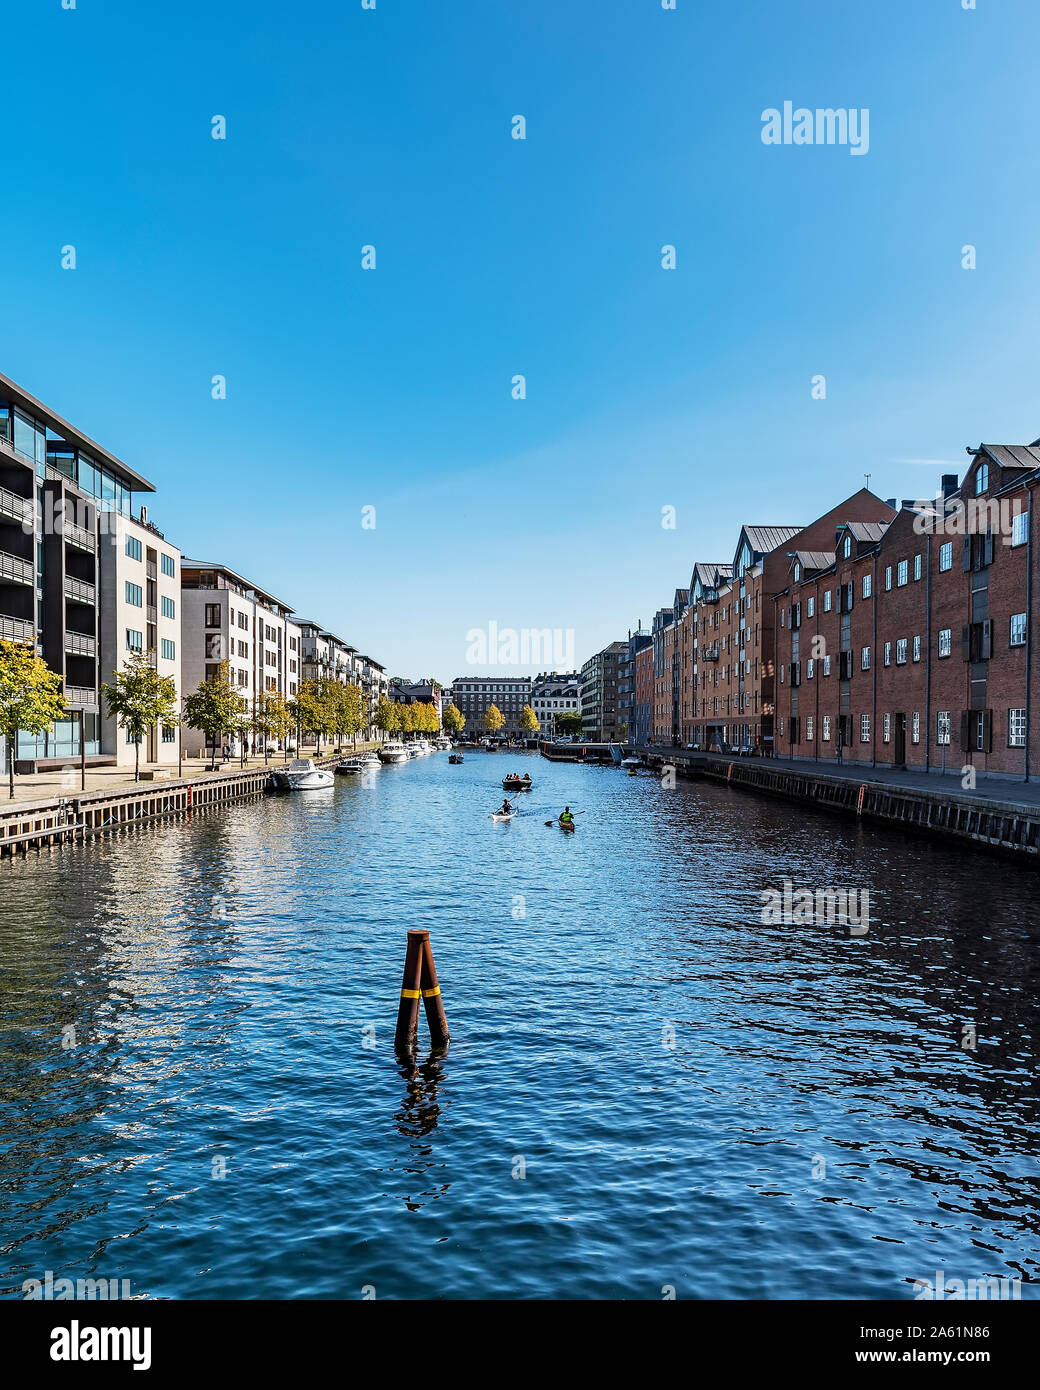 COPENHAGEN, Danimarca - 21 settembre 2019: di una tipica scena da uno dei canali della città. Foto Stock